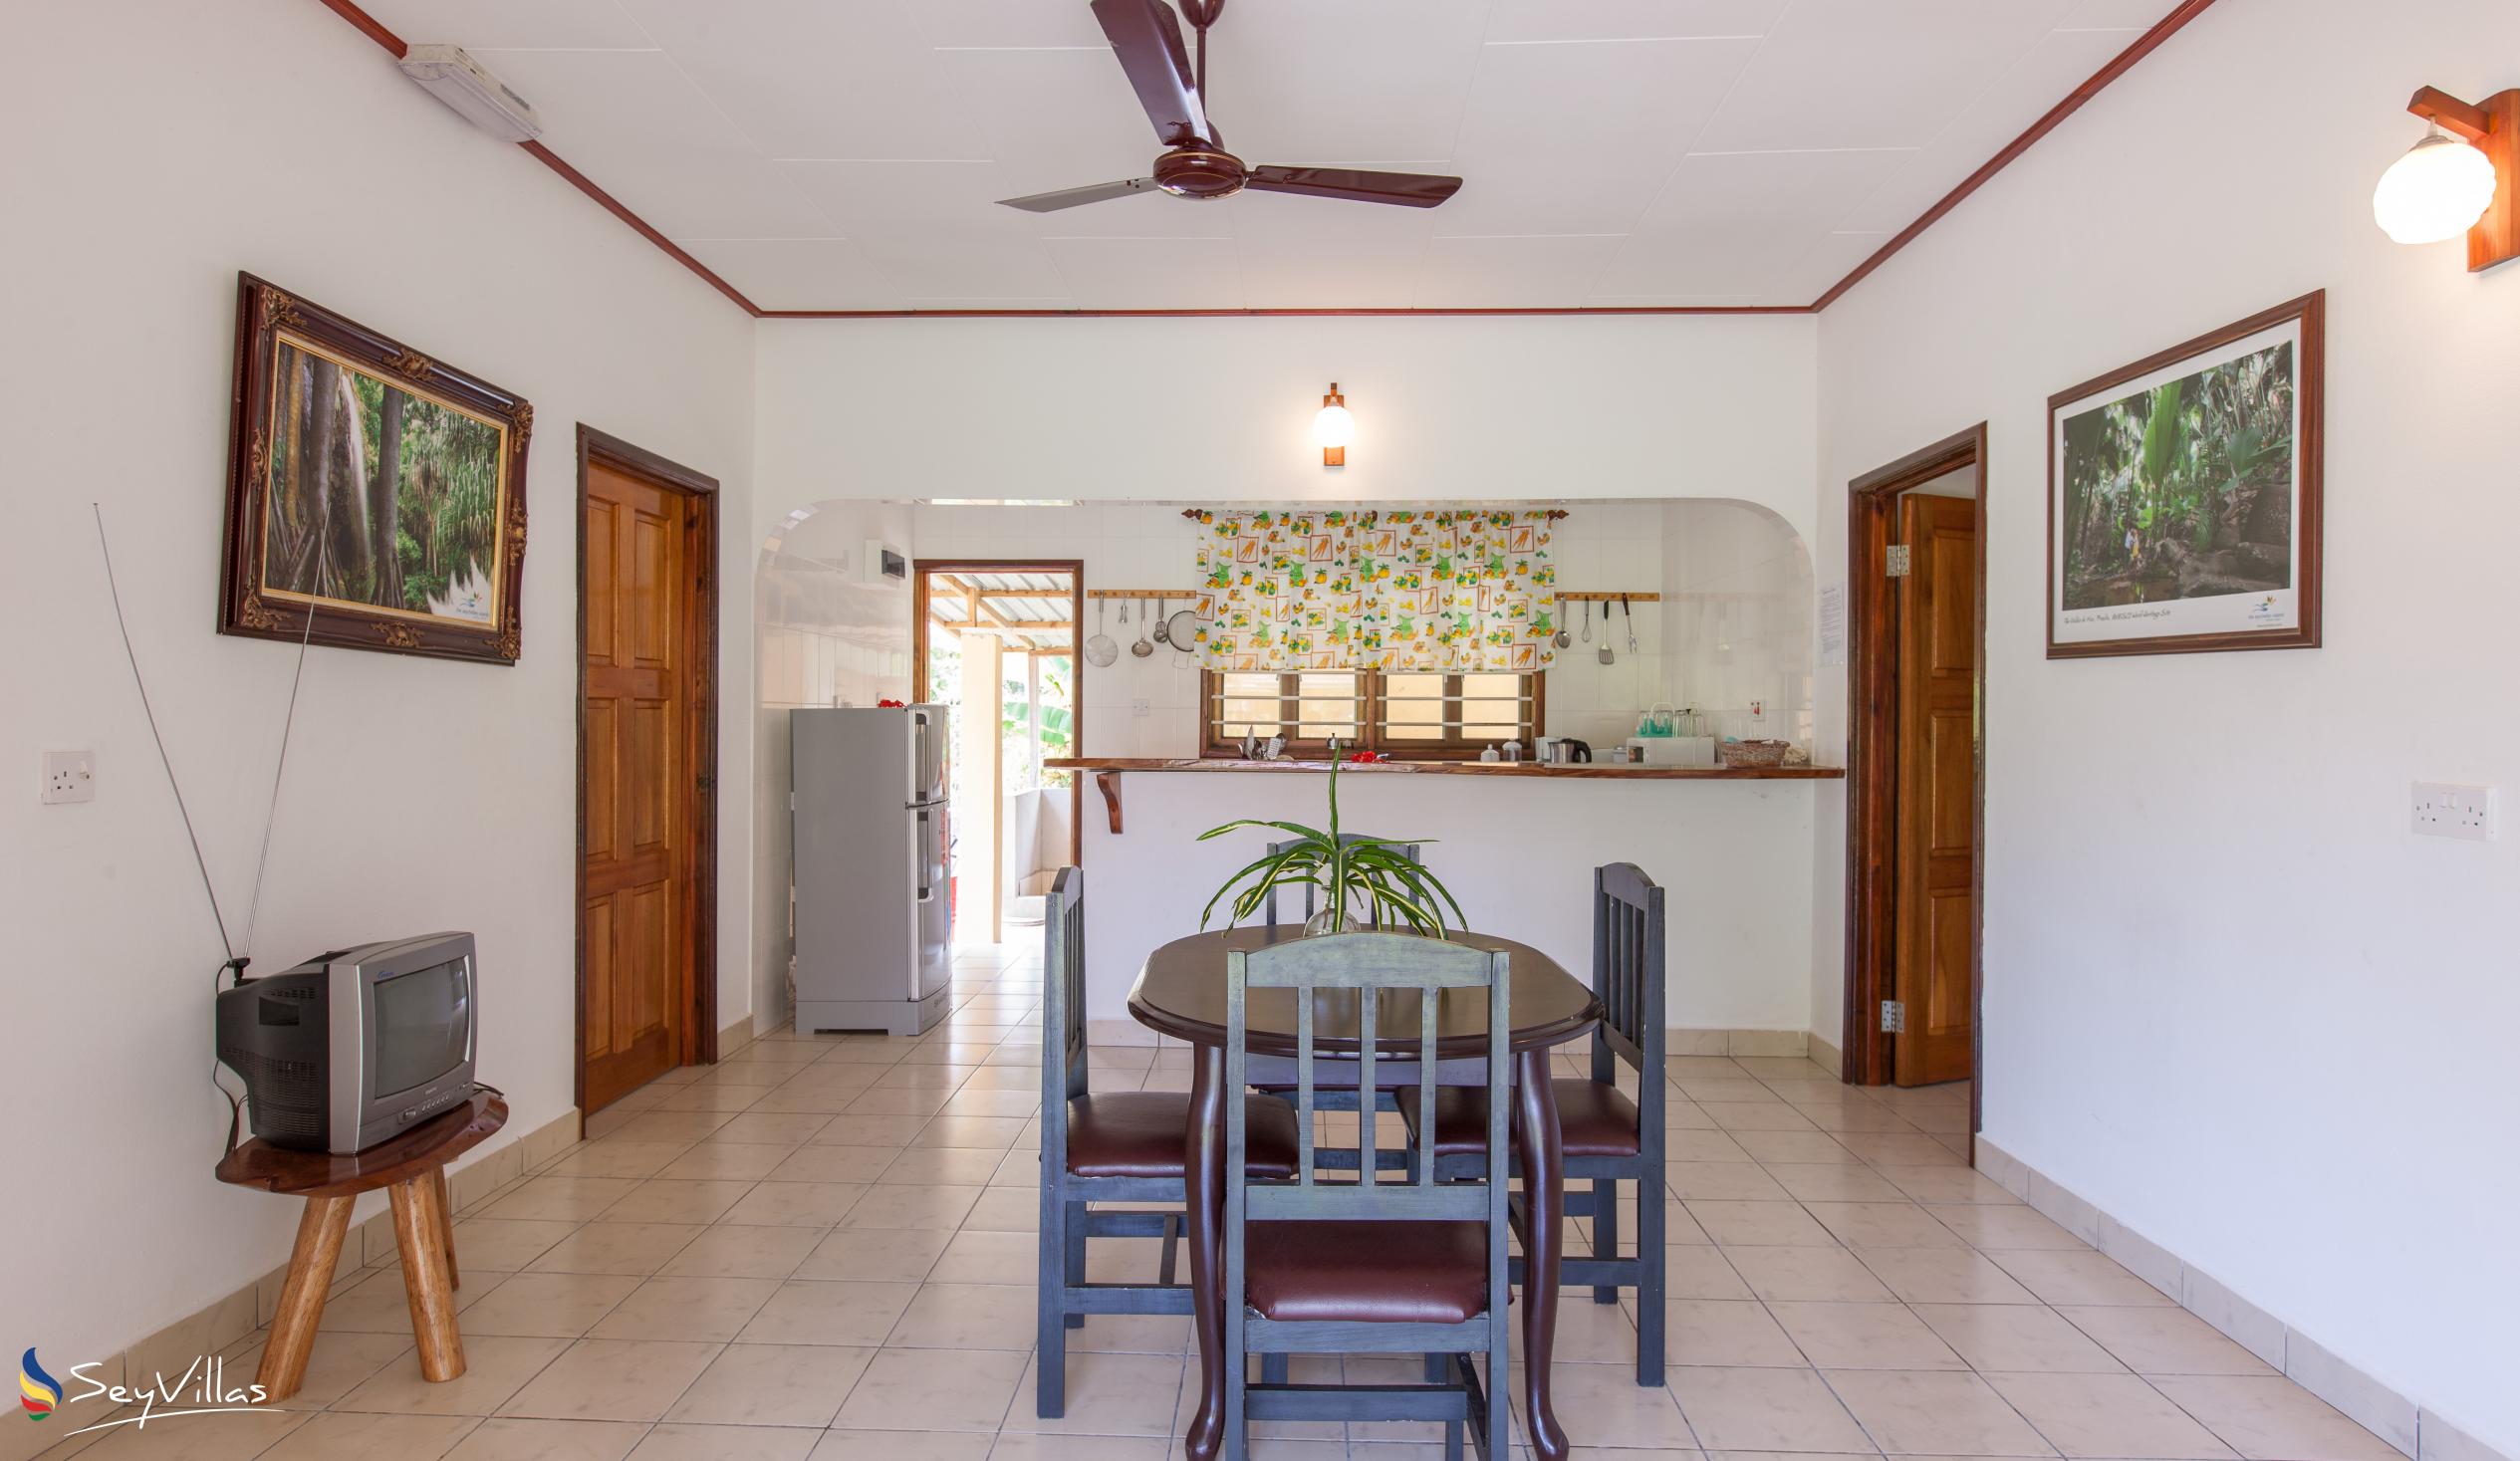 Foto 35: Zerof Self Catering  Apartments - Bungalow à 2 chambres - La Digue (Seychelles)